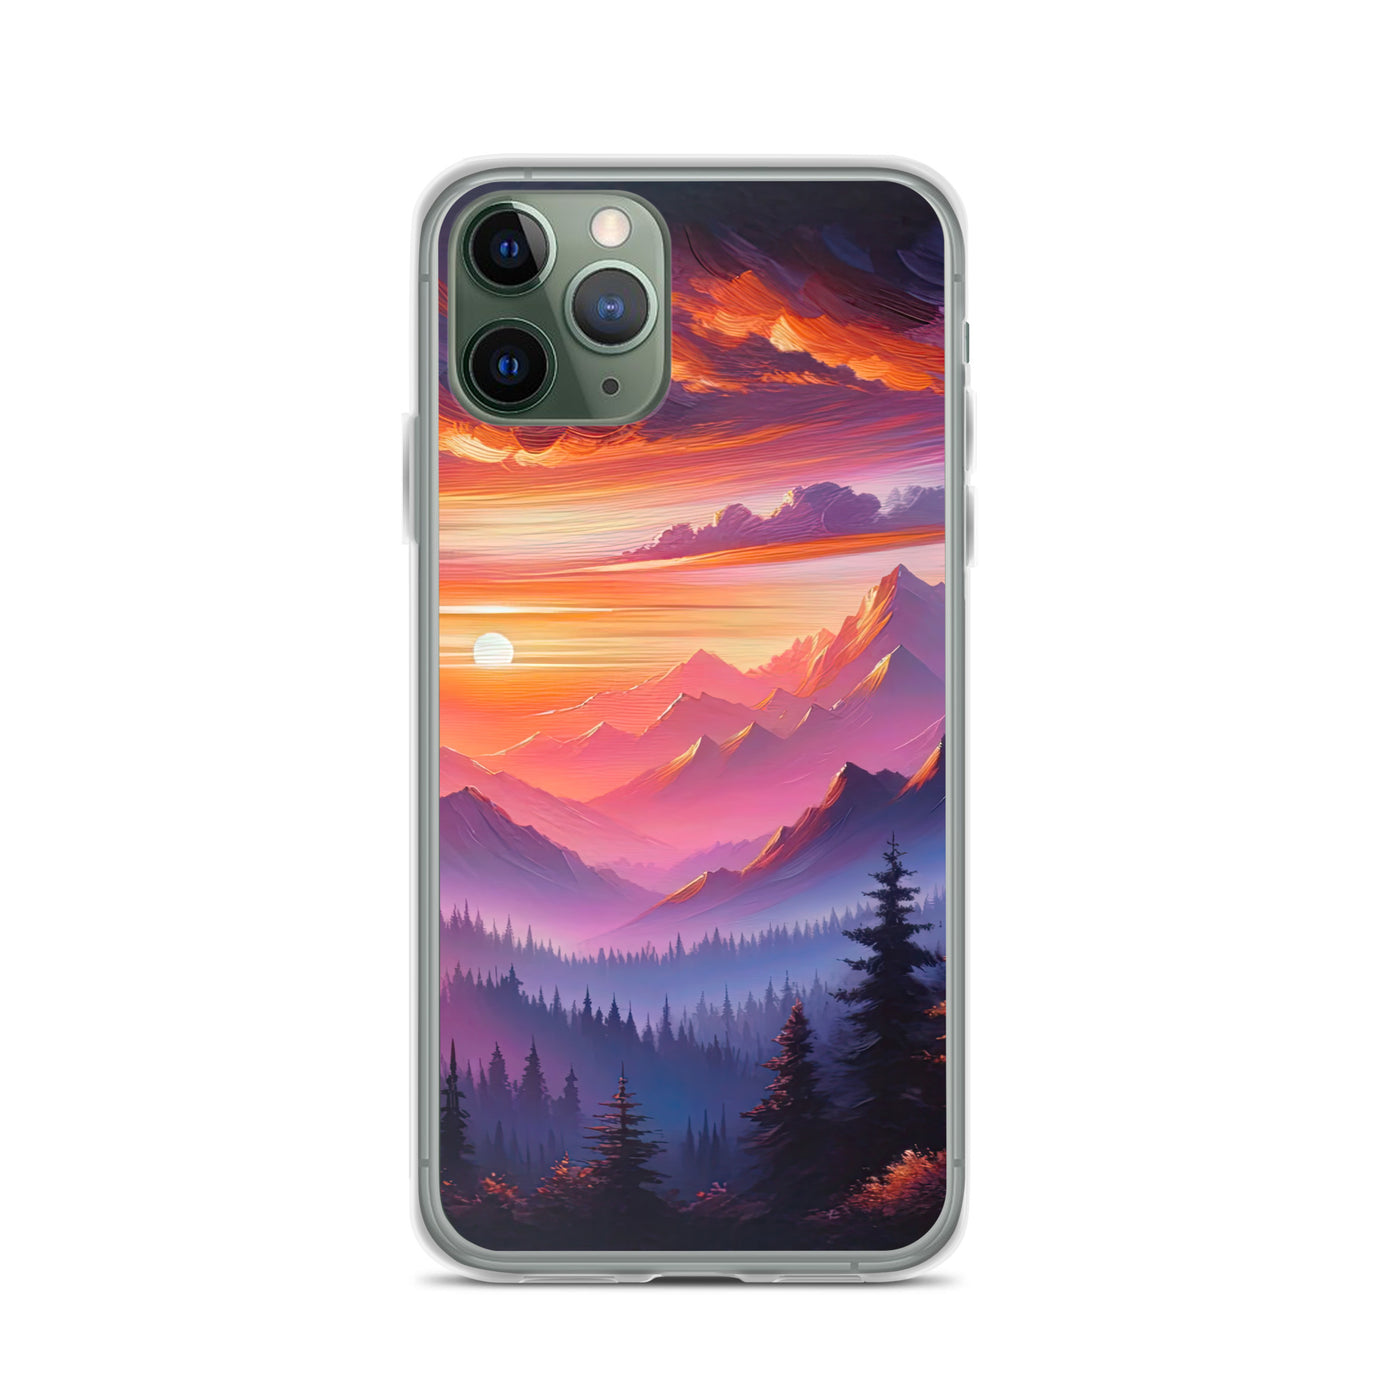 Ölgemälde der Alpenlandschaft im ätherischen Sonnenuntergang, himmlische Farbtöne - iPhone Schutzhülle (durchsichtig) berge xxx yyy zzz iPhone 11 Pro